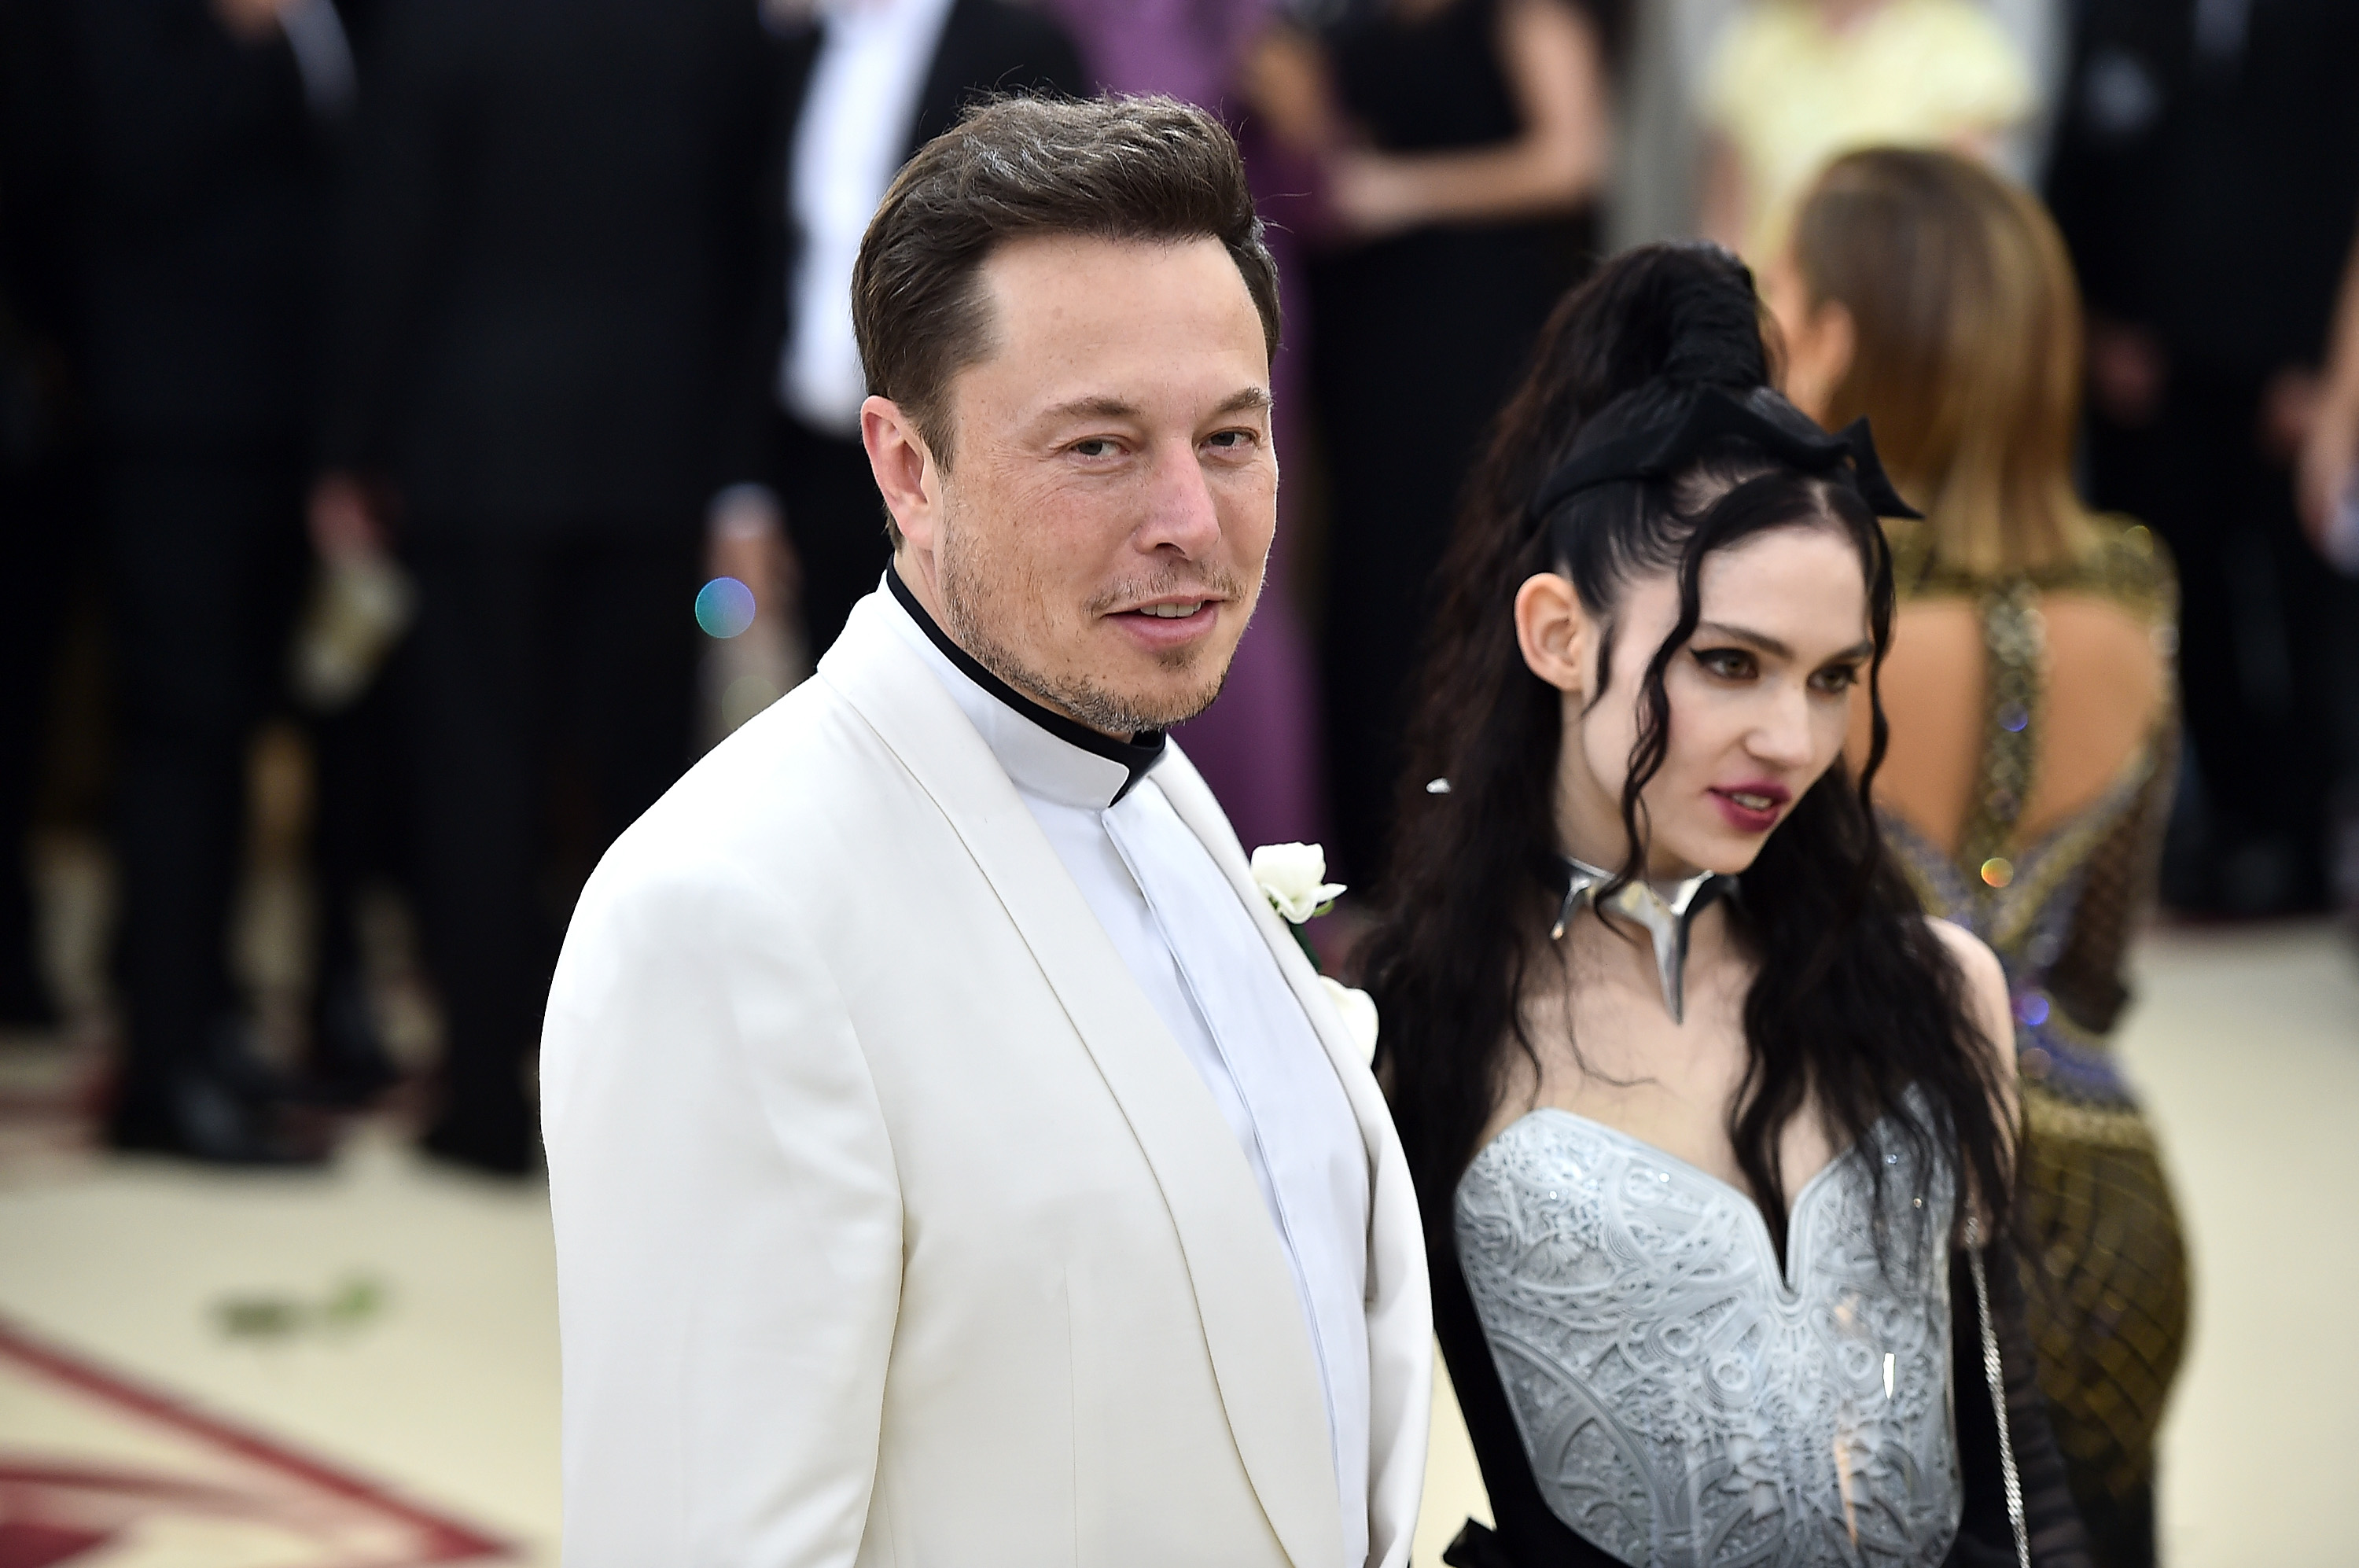 Elon Musks girlfriend Grimes reveals alien scars tattooed on back   Hurts too much  Weird  News  Expresscouk